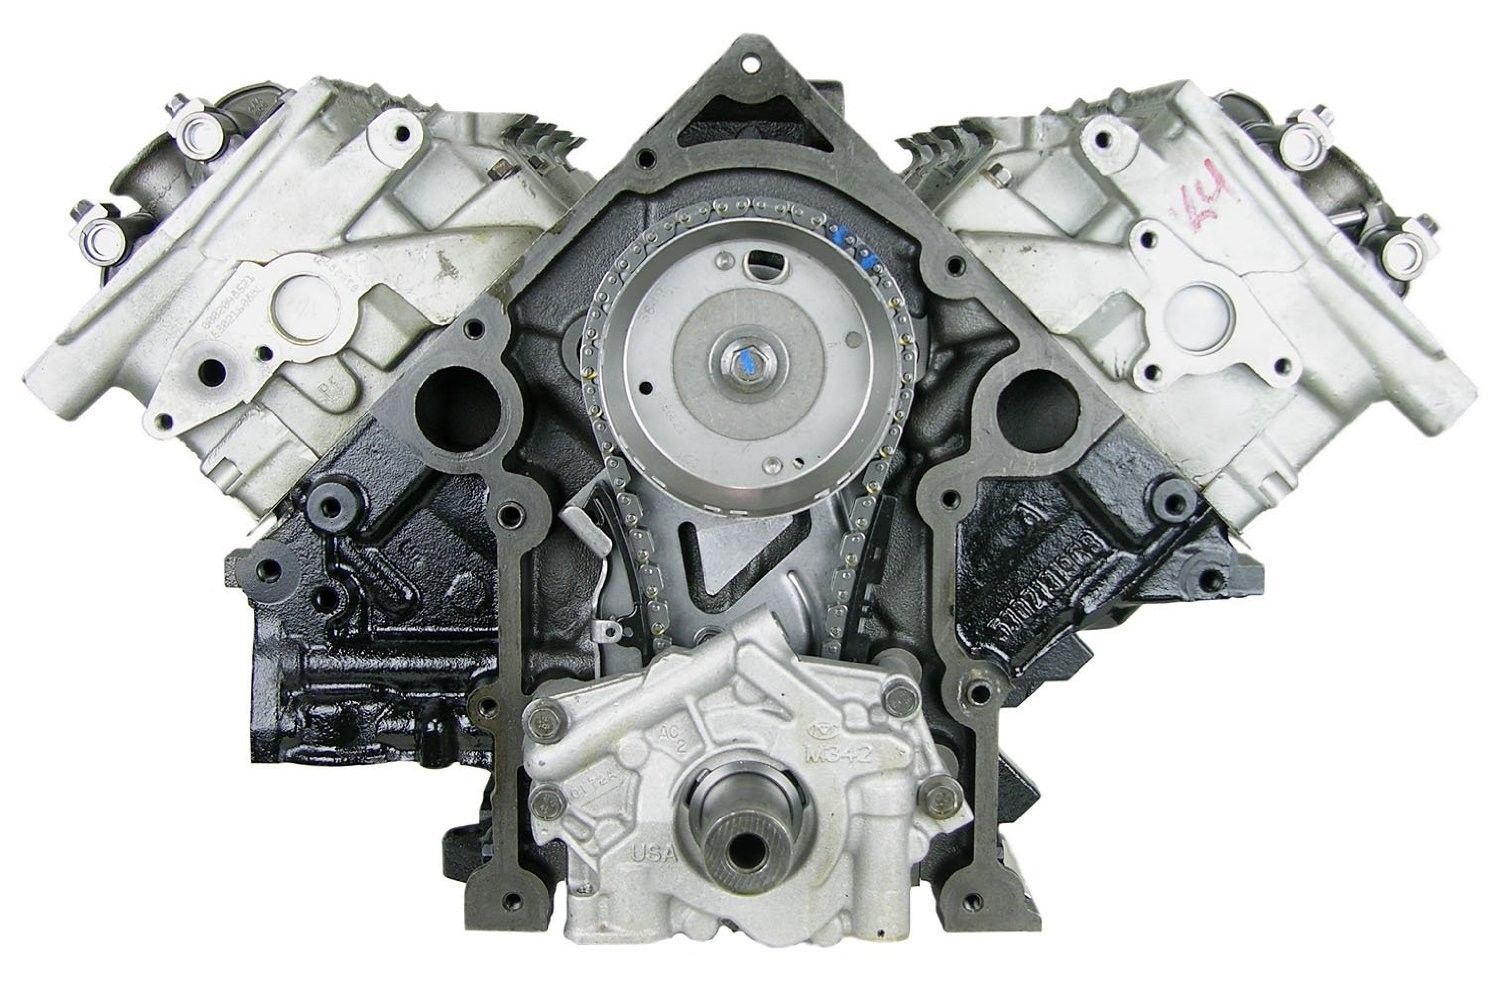 5.7L Hemi V8 Engine